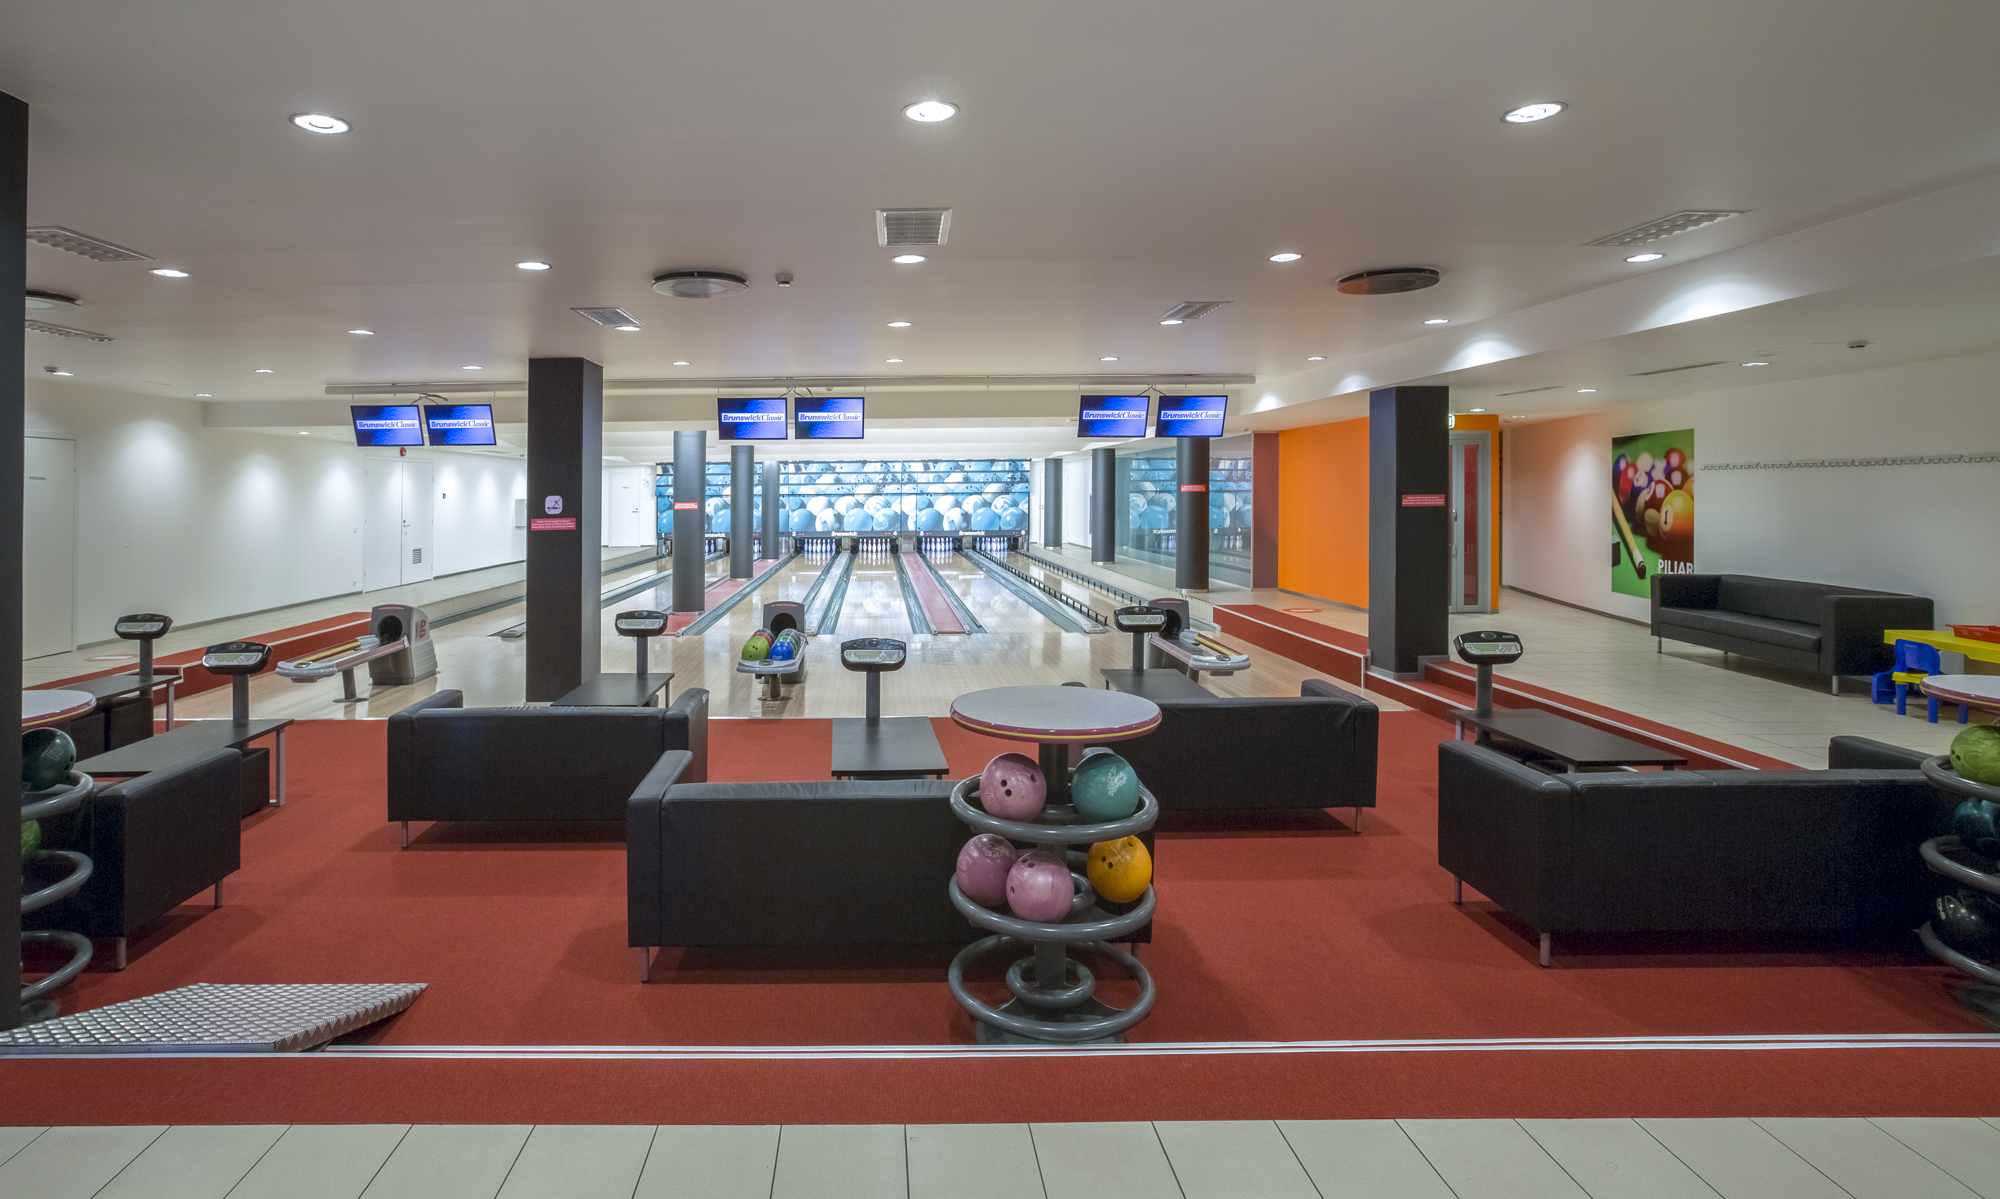 Tervise Paradiisi 0-korrusel ootab kõiki huvilisi 6 rajaga bowlingusaal. Bowlingusaal sobib suurepäraselt sünnipäevade, pidude, firmaürituste ja turniiride pidamiseks. Bowlingumäng on meeldiv ja aktiivne ajaviide. Lisaks kuuliveeretamisele saate nautida ka maitsvaid suupisteid ja karastavaid jooke.